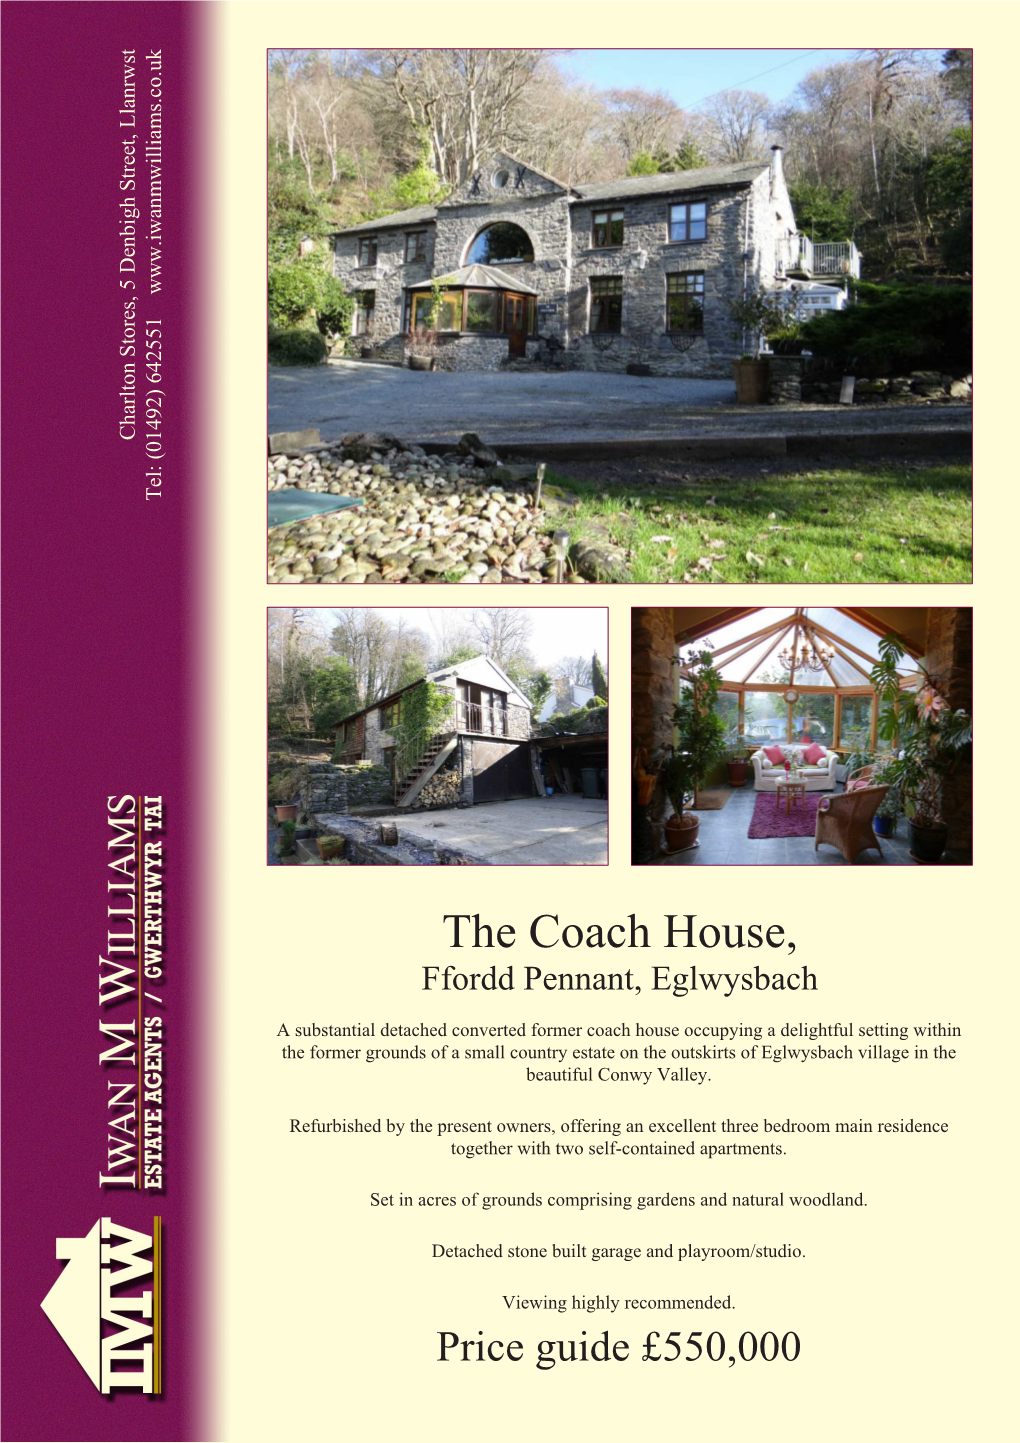 The Coach House, Ffordd Pennant, Eglwysbach, LL28 5UH